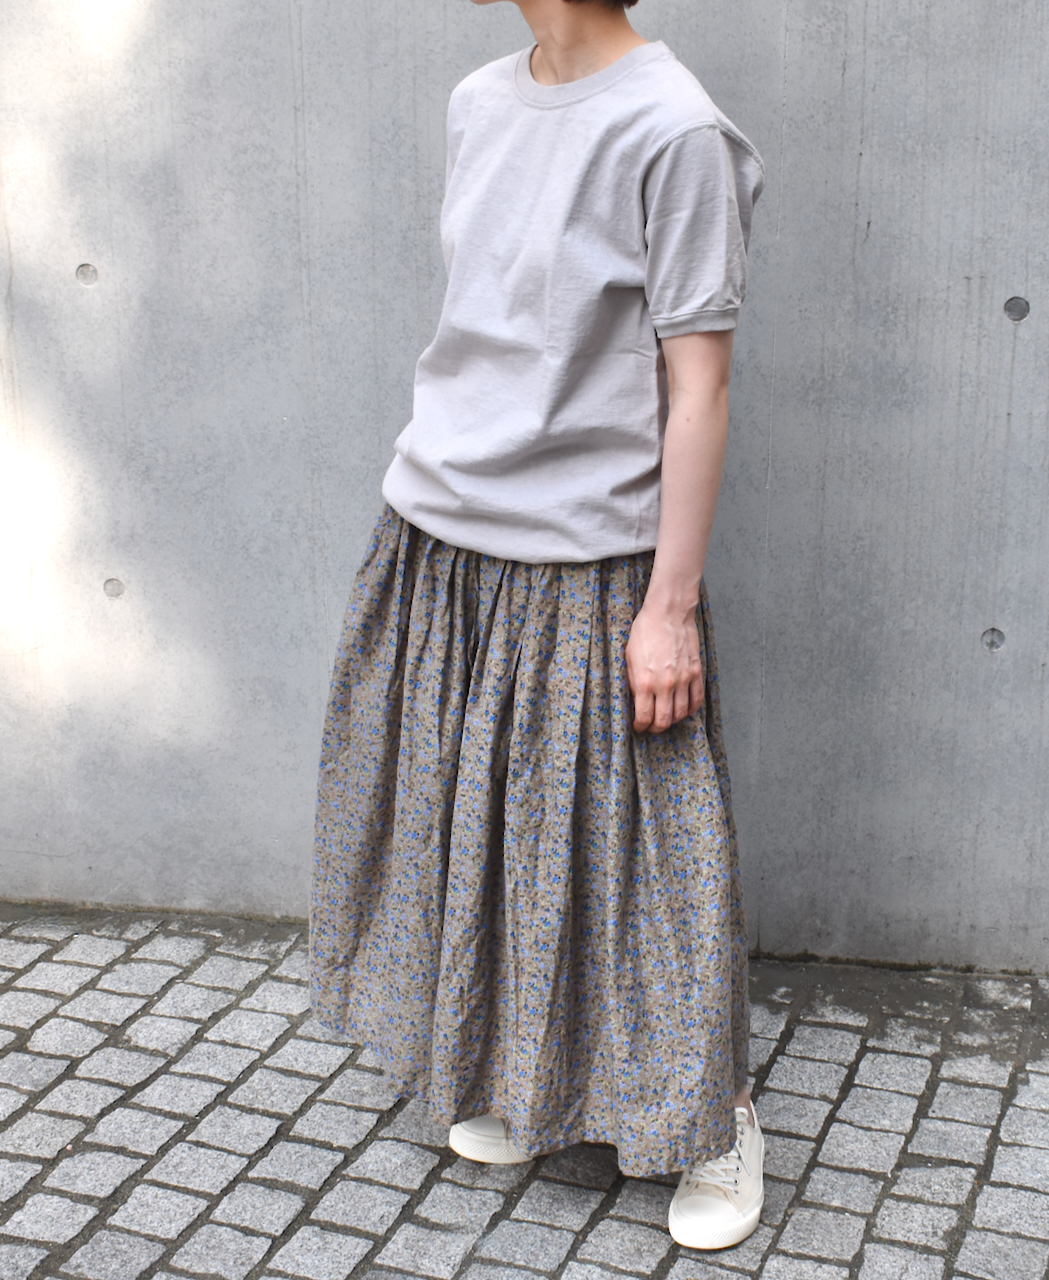  ソイル  Cotton Voile Small Flower Print Gathered Skirt  style 